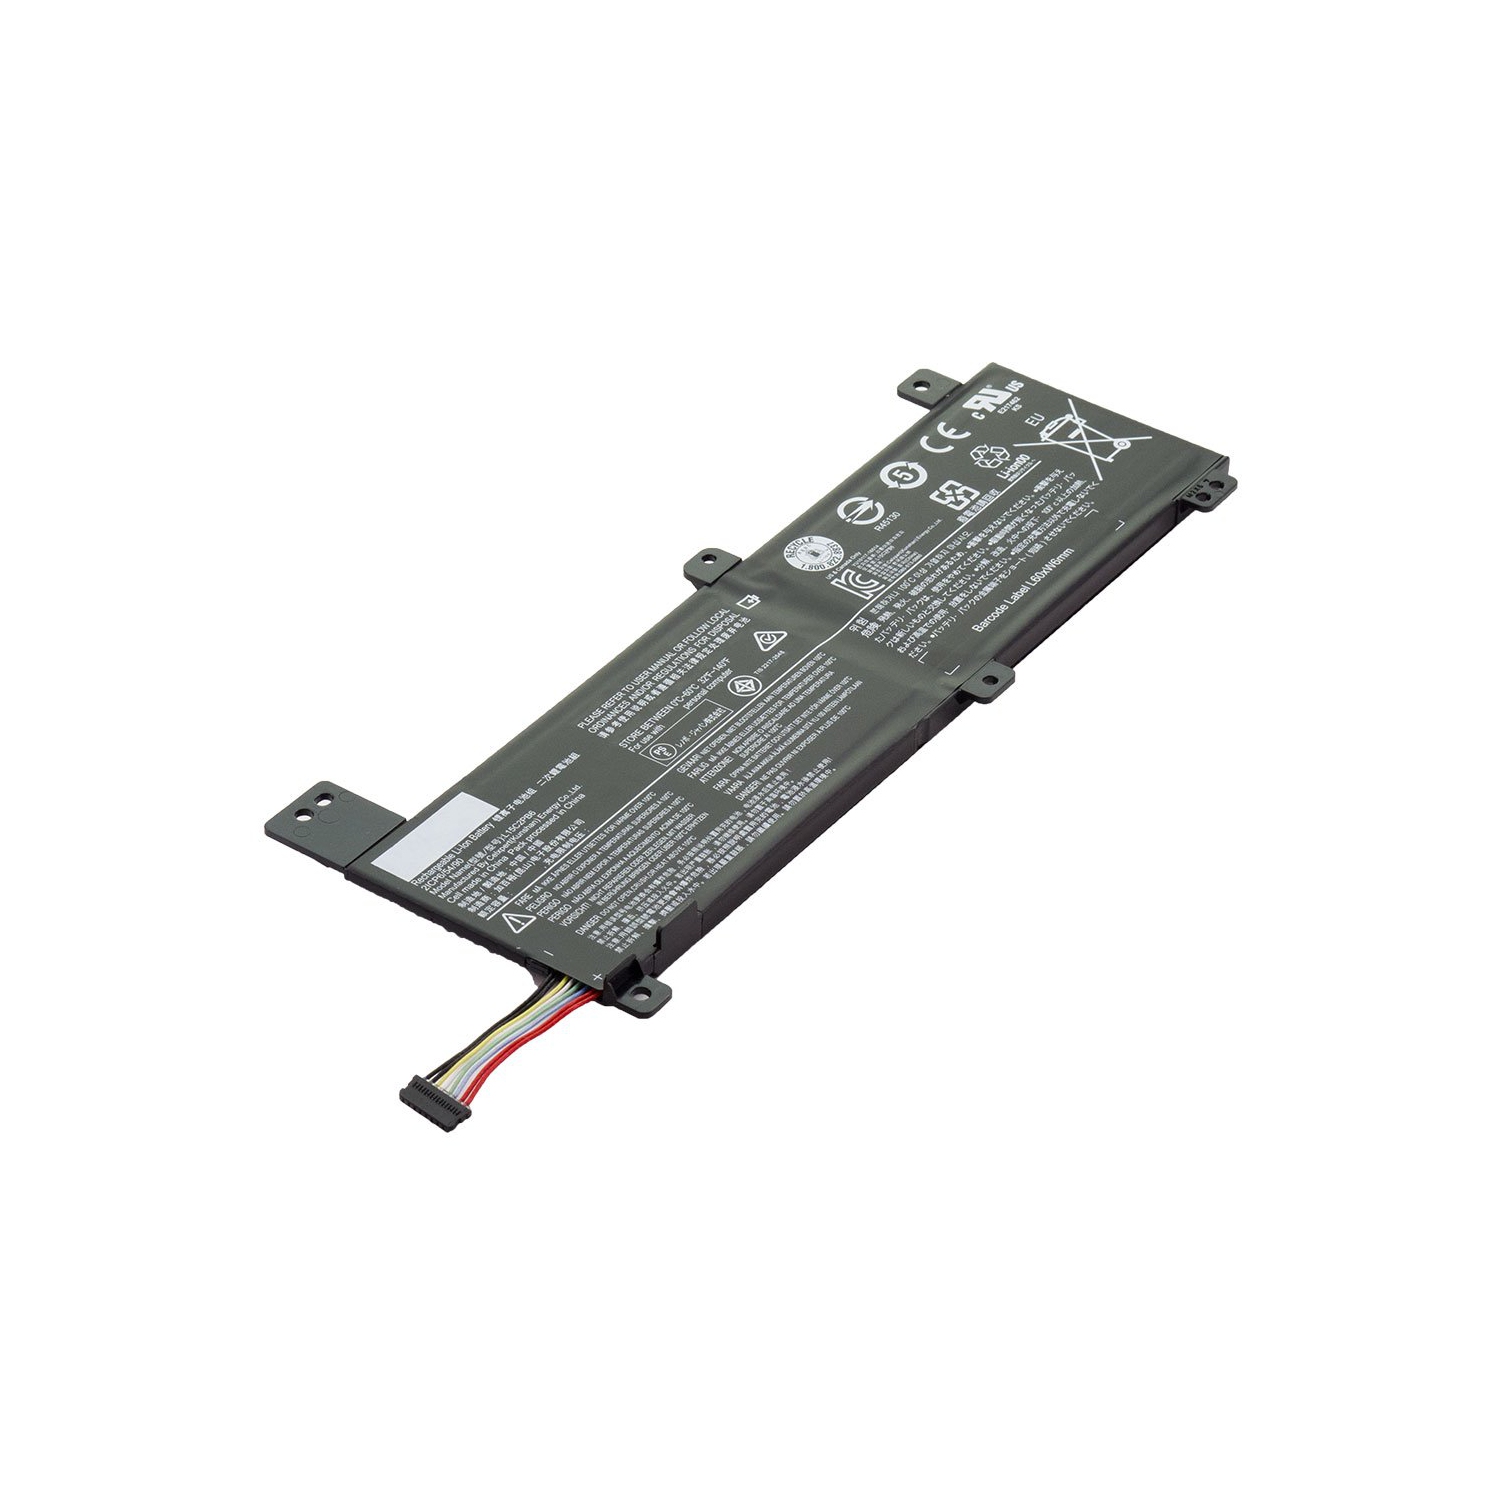 Laptop Battery Replacement for Lenovo IdeaPad 310 14ISK 80SL000CPH, IdeaPad 310 14ISK, L15C2PB6, L15L2PB2, L15M2PB4